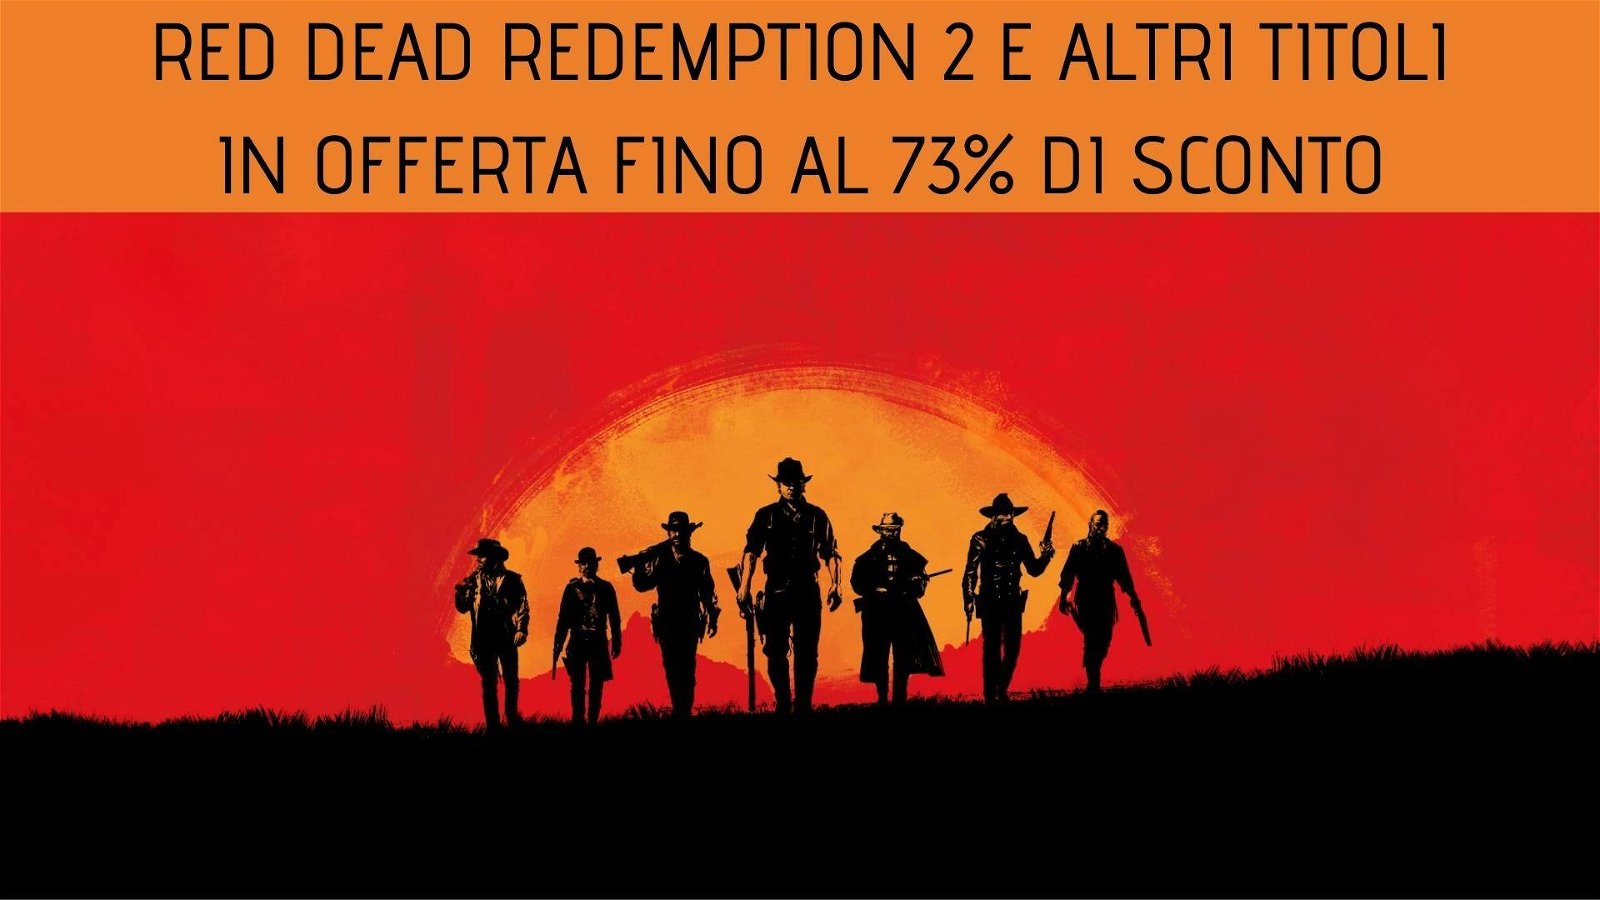 Immagine di Red Dead Redemption 2 e altri titoli Rockstar in sconto fino al 73% su GamersGate!